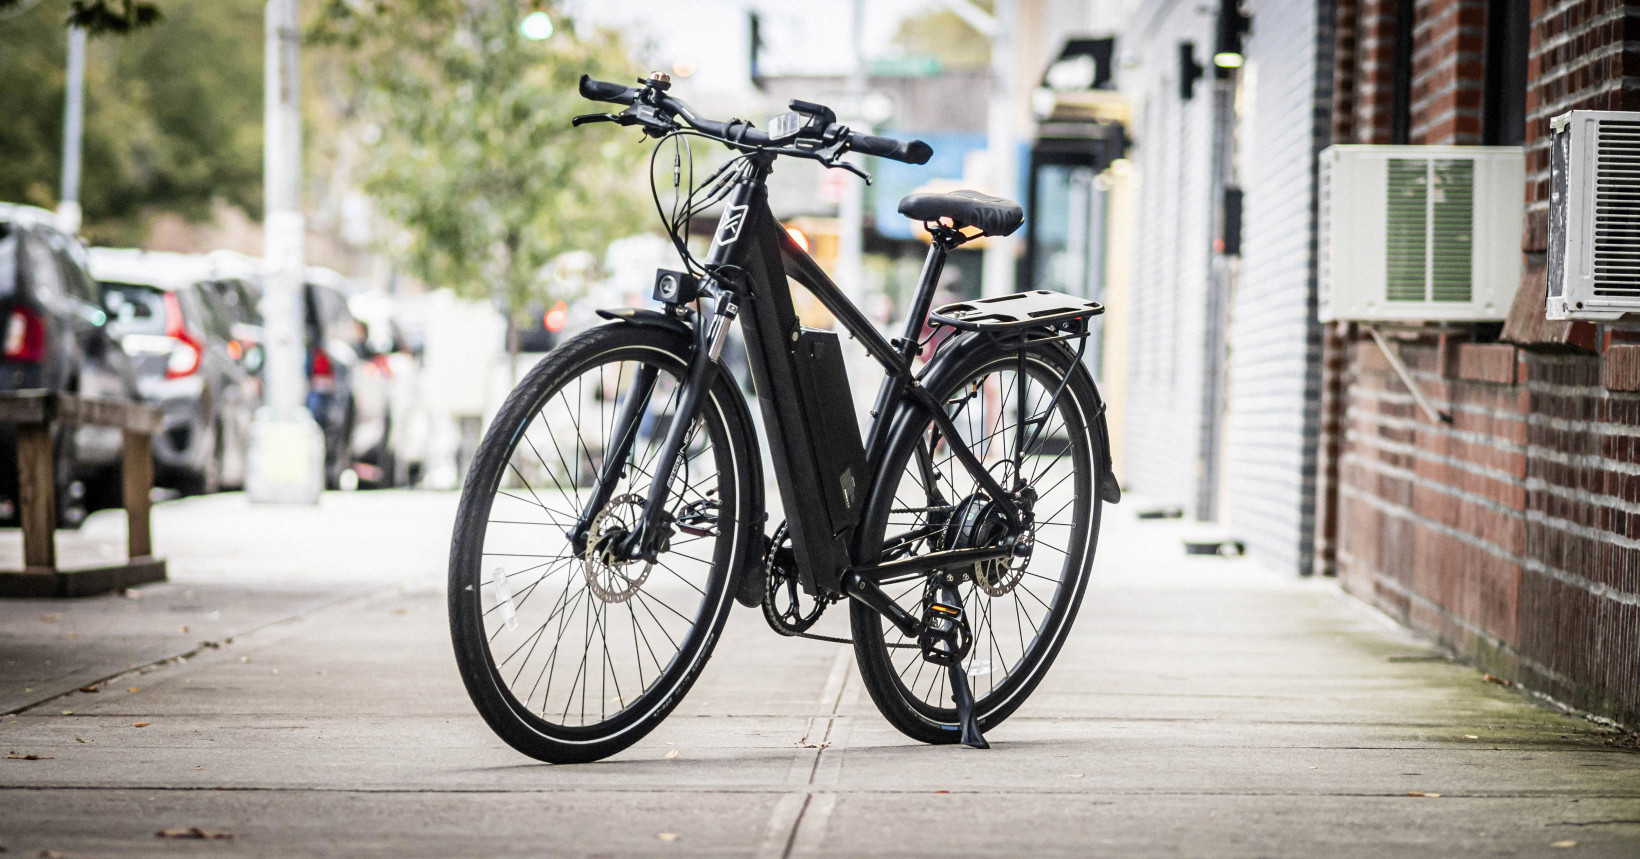 Découvrez notre liste des meilleurs vélos électriques en 2022. Budget, confort, type d'utilisateur, nous avons pensé à tout.